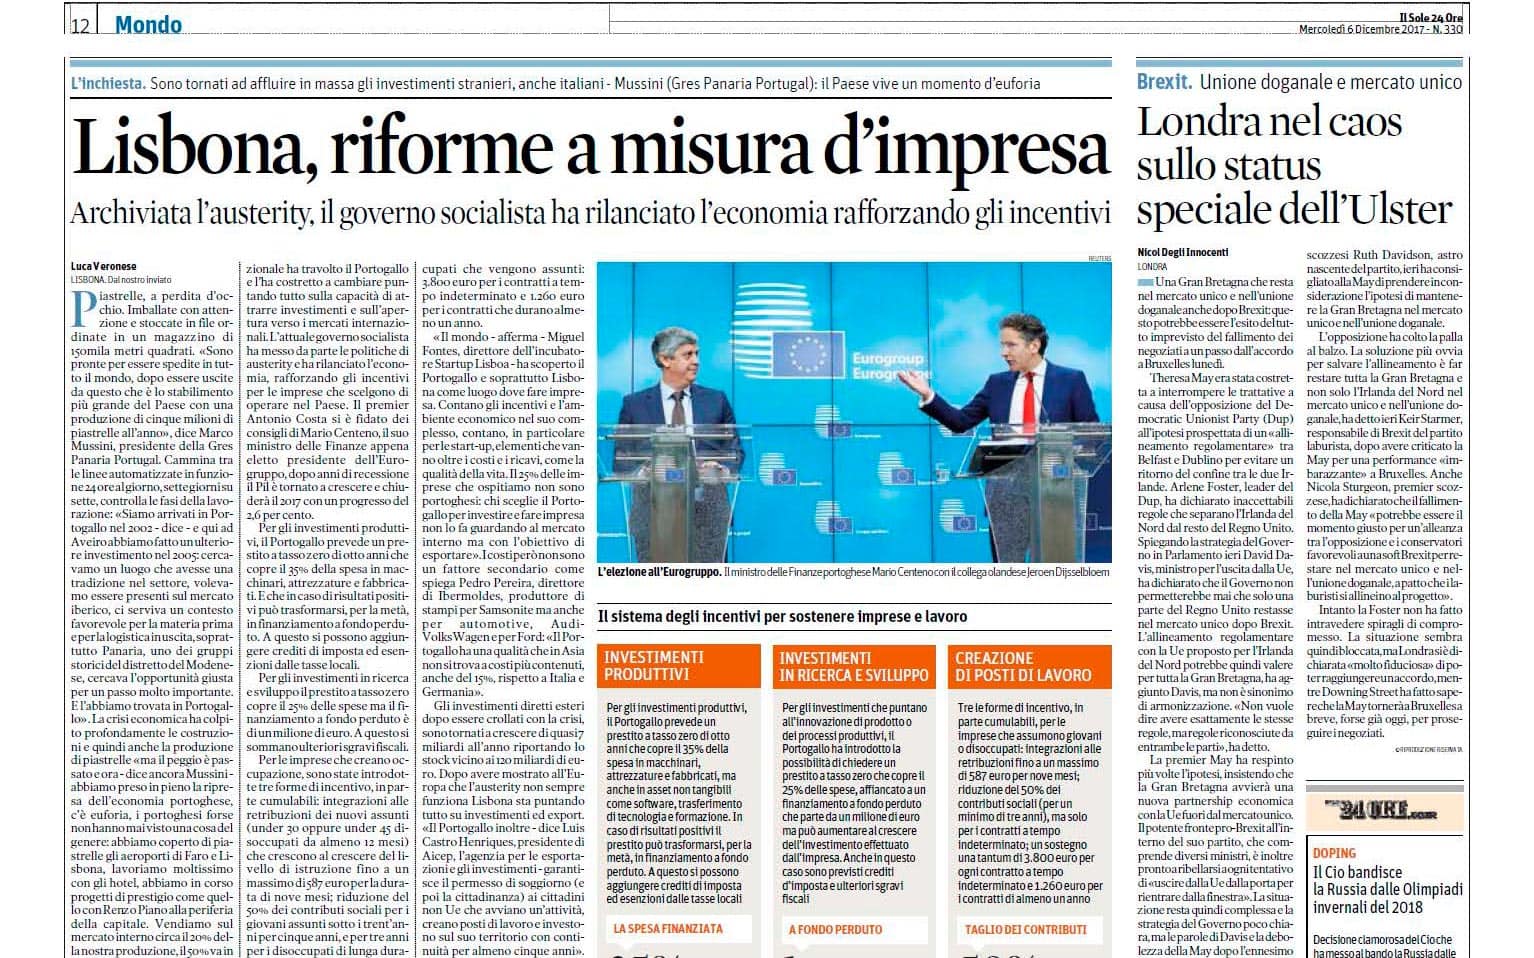 Gres Panaria Portugal em destaque na imprensa italiana